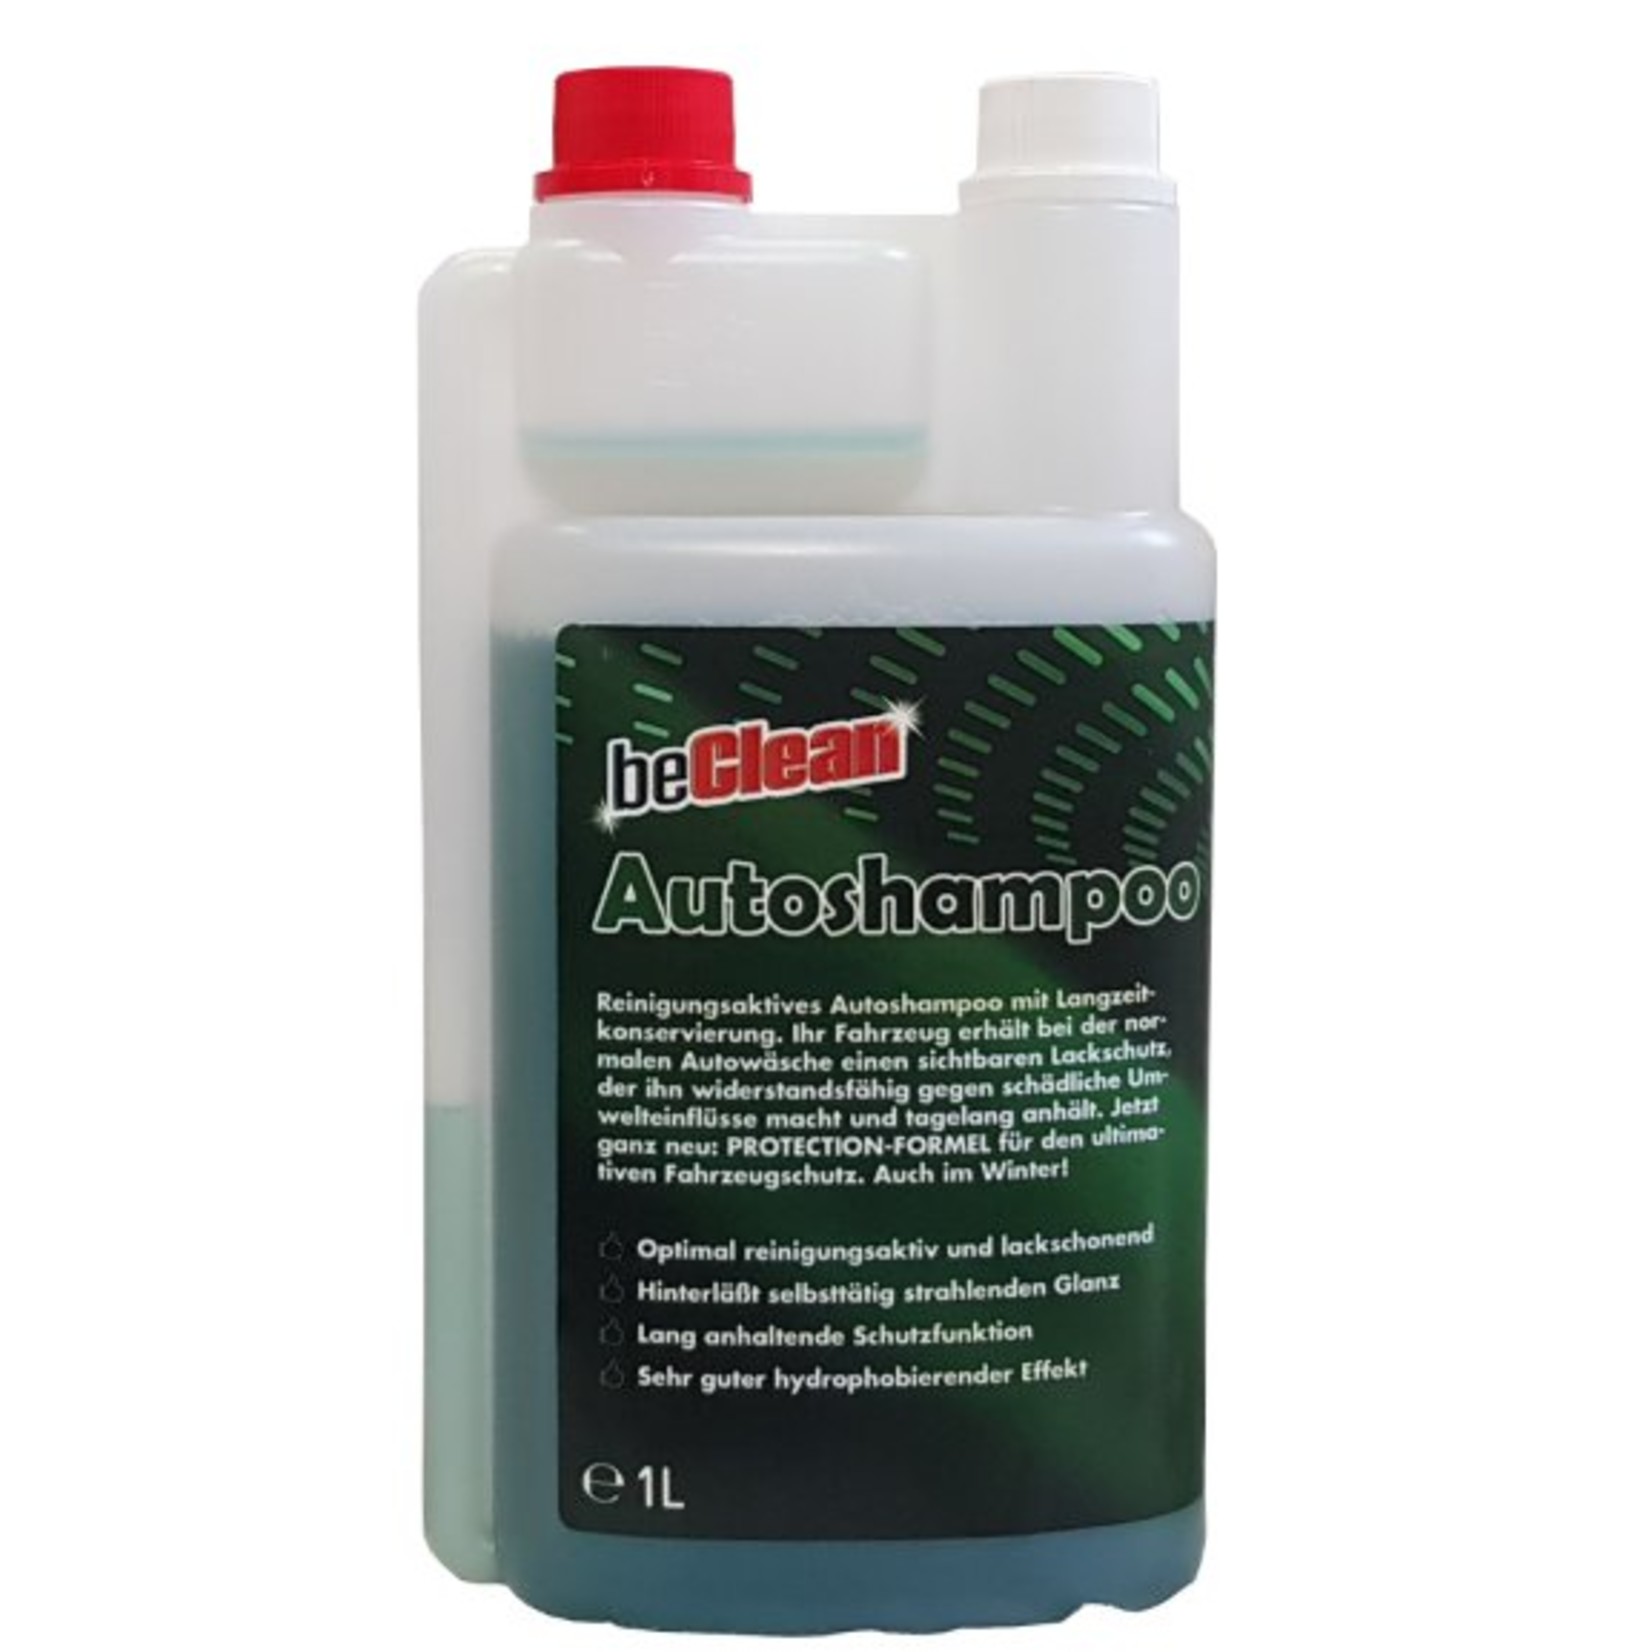 beClean Auto-Shampoo 2x1000ml Dosierflasche